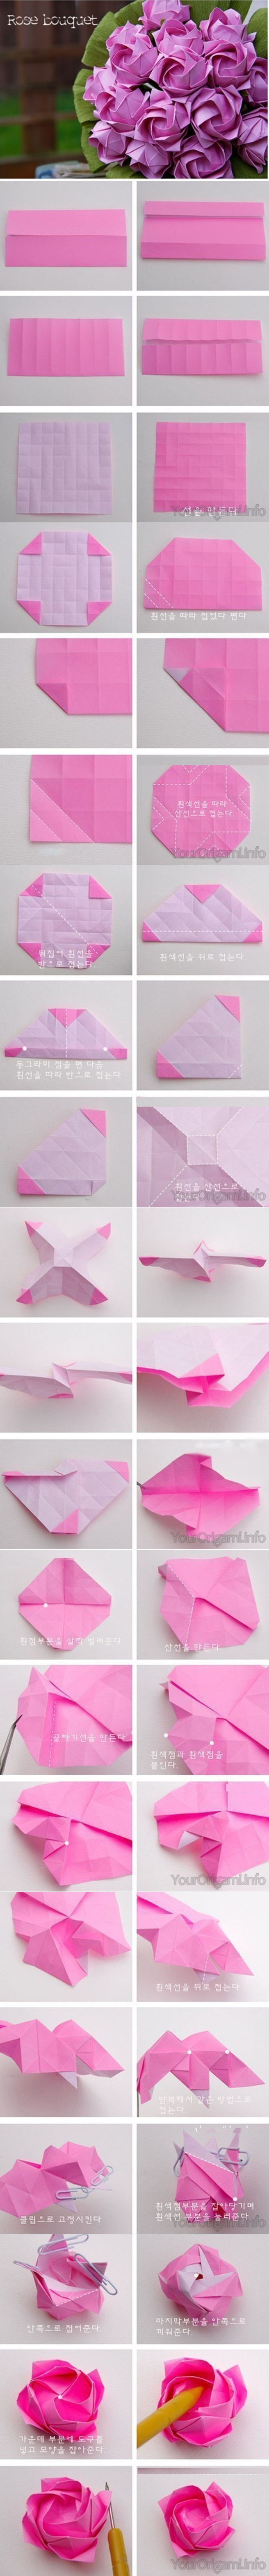 Origami Flower Tutorial Paper Flower Tutorial Origami Flowers Healthy